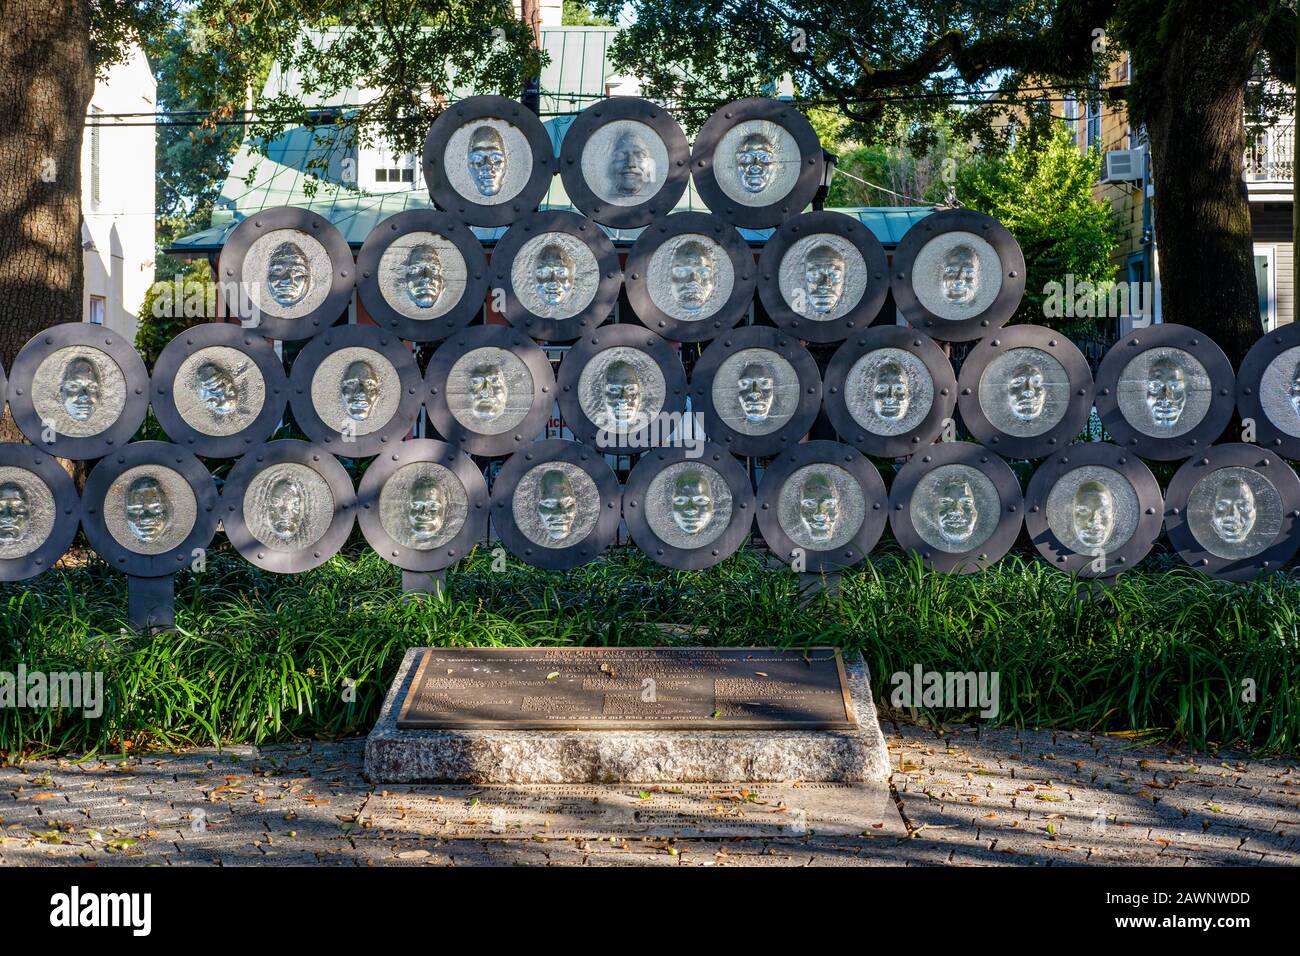 AIDS-Denkmal von New Orleans, von Tim Tate, gegossene Glas- und Stahlskulptur mit lokalen Gesichtern, Washington Square Park, Marigny, New Orleans, Louisiana, USA Stockfoto